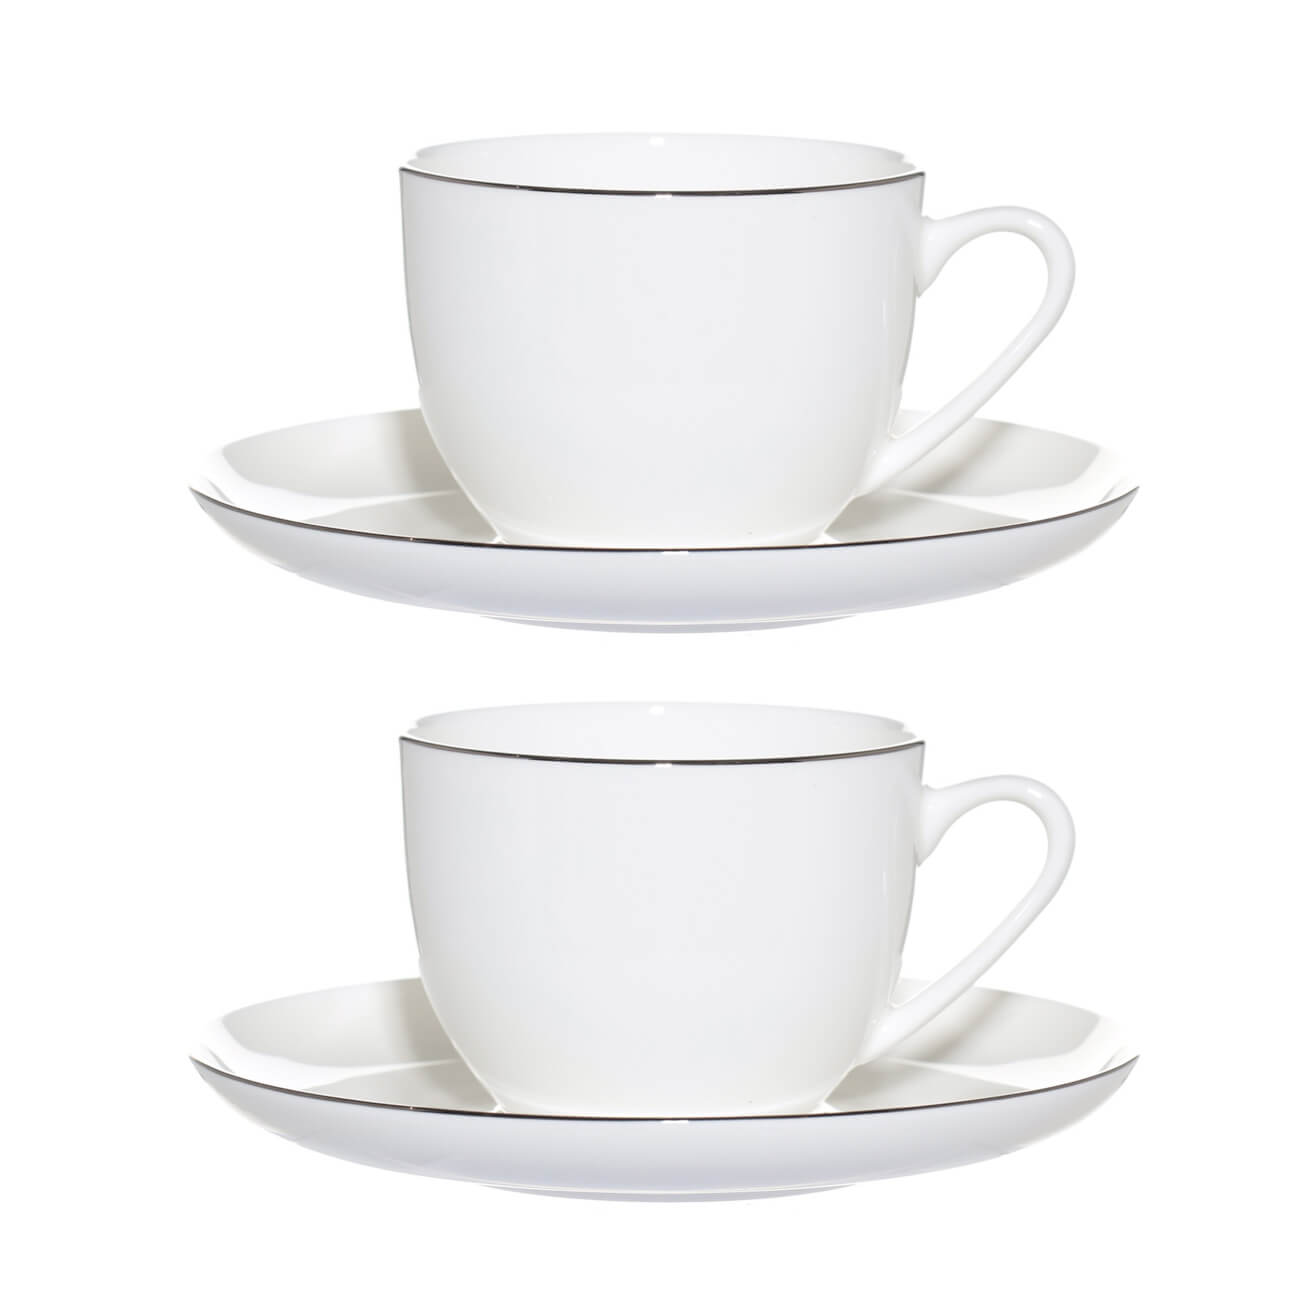 Пара чайная, 2 перс, 4 пр, 250 мл, фарфор F, белая, Ideal silver изображение № 1